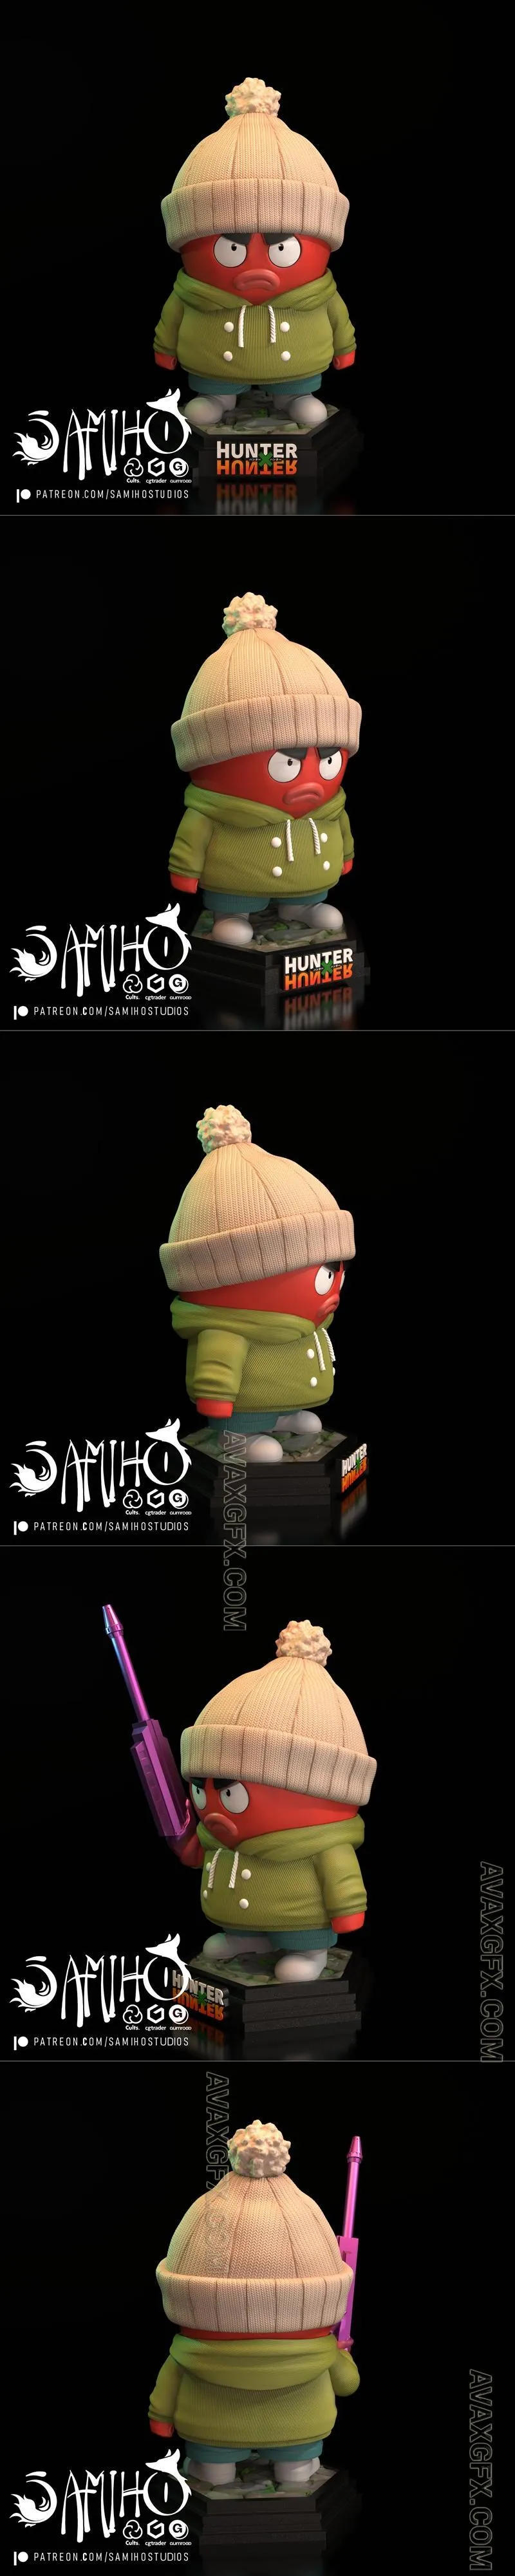 Samiho Studios - Ikalgo - STL 3D Model